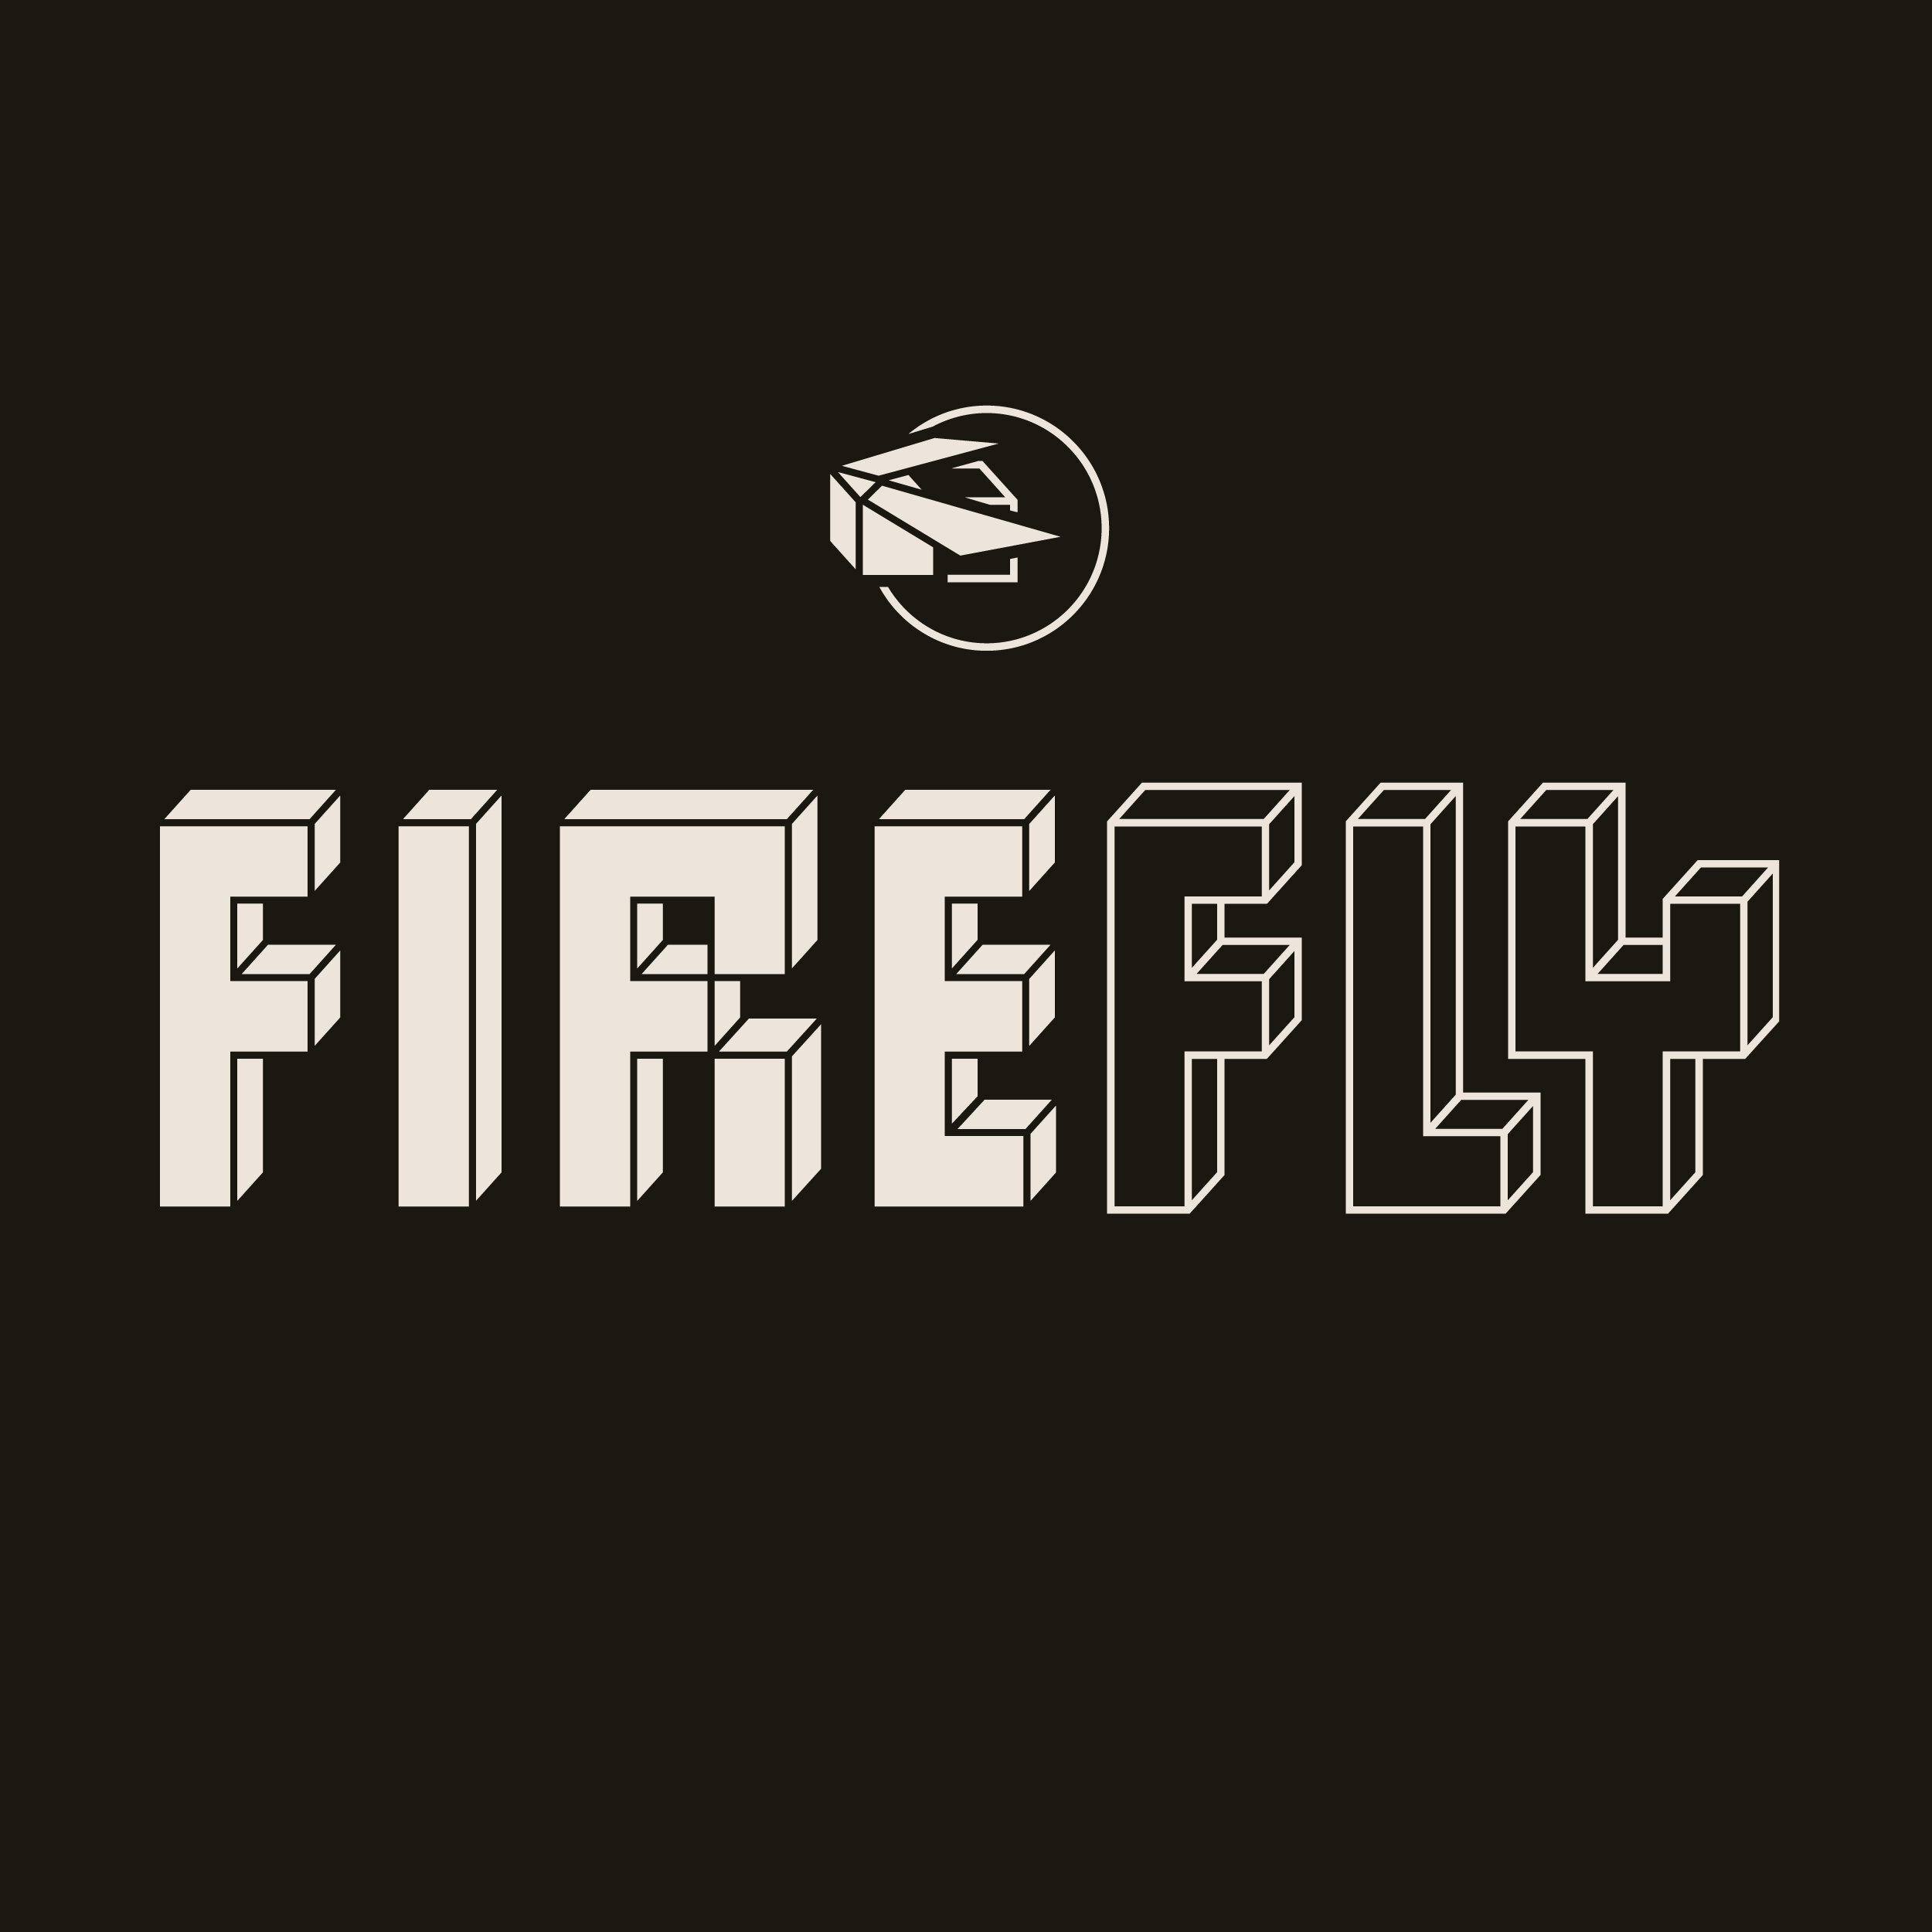 Firefly-Branding_Thumbnail-Dark.jpg